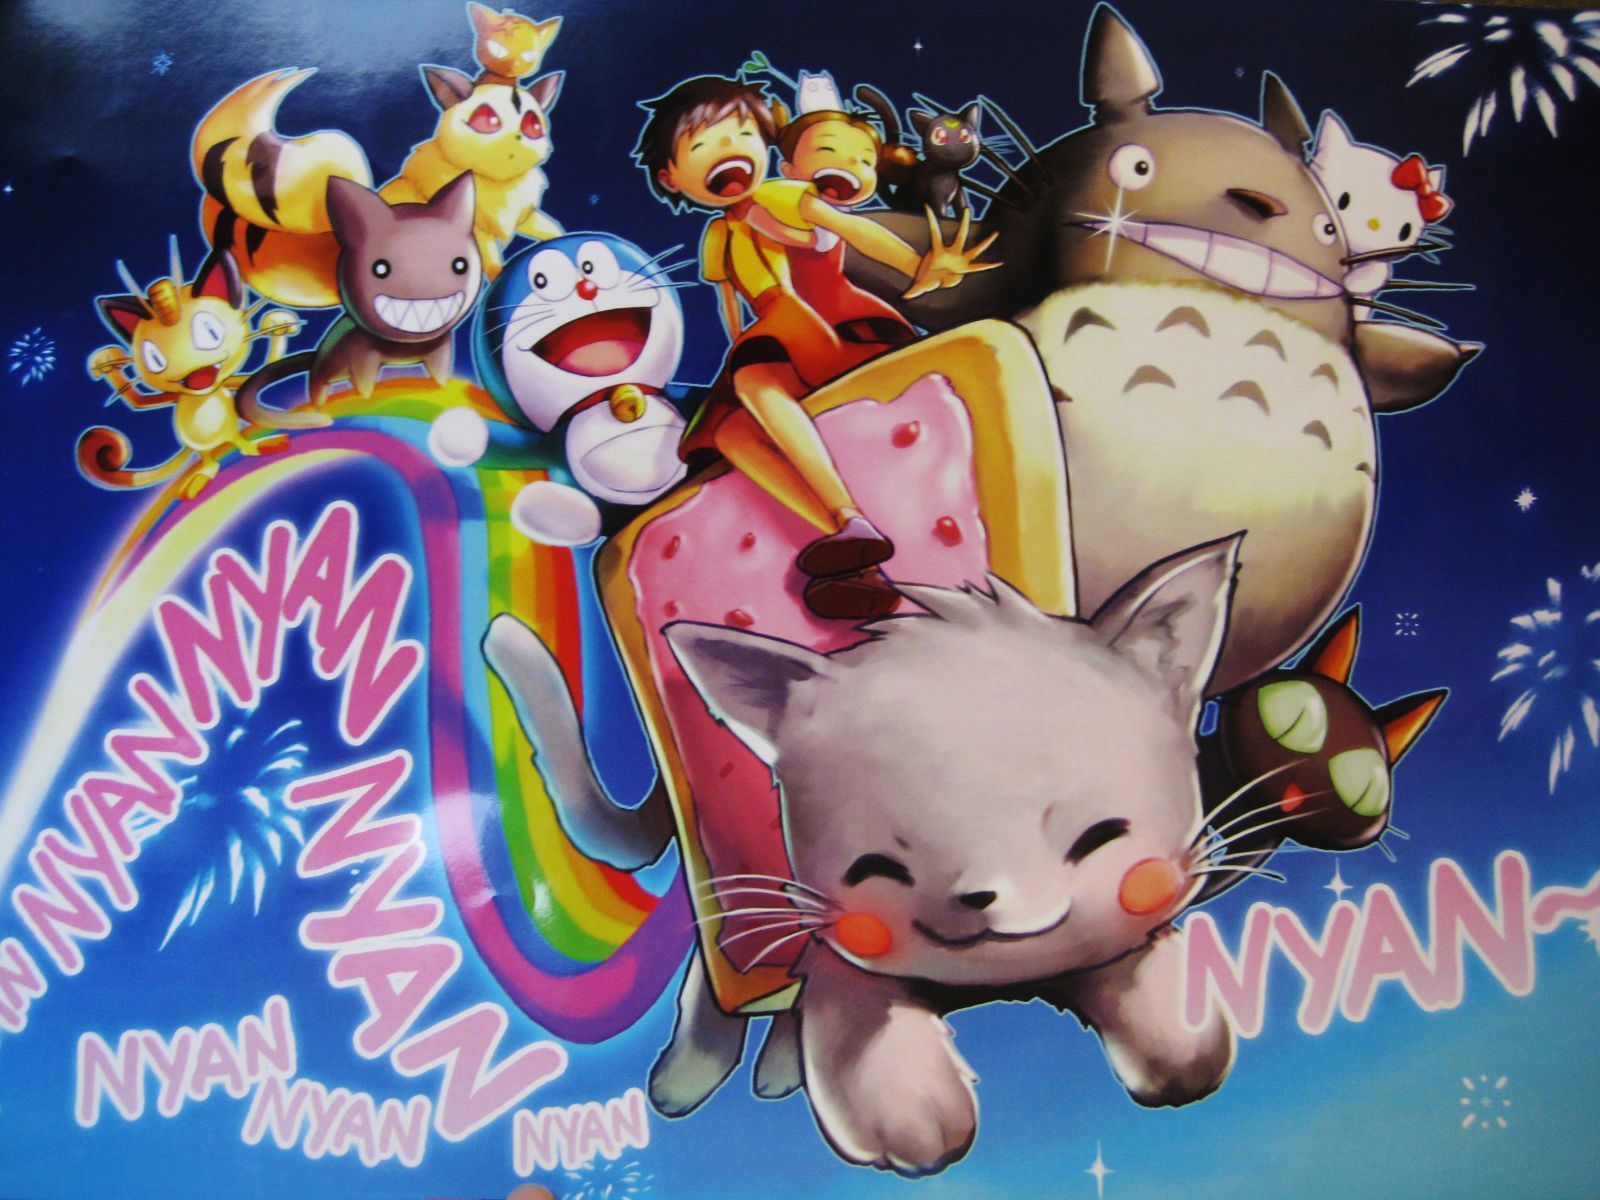 Kawaii Nyan Cat Wallpaper Free Kawaii Nyan Cat Background